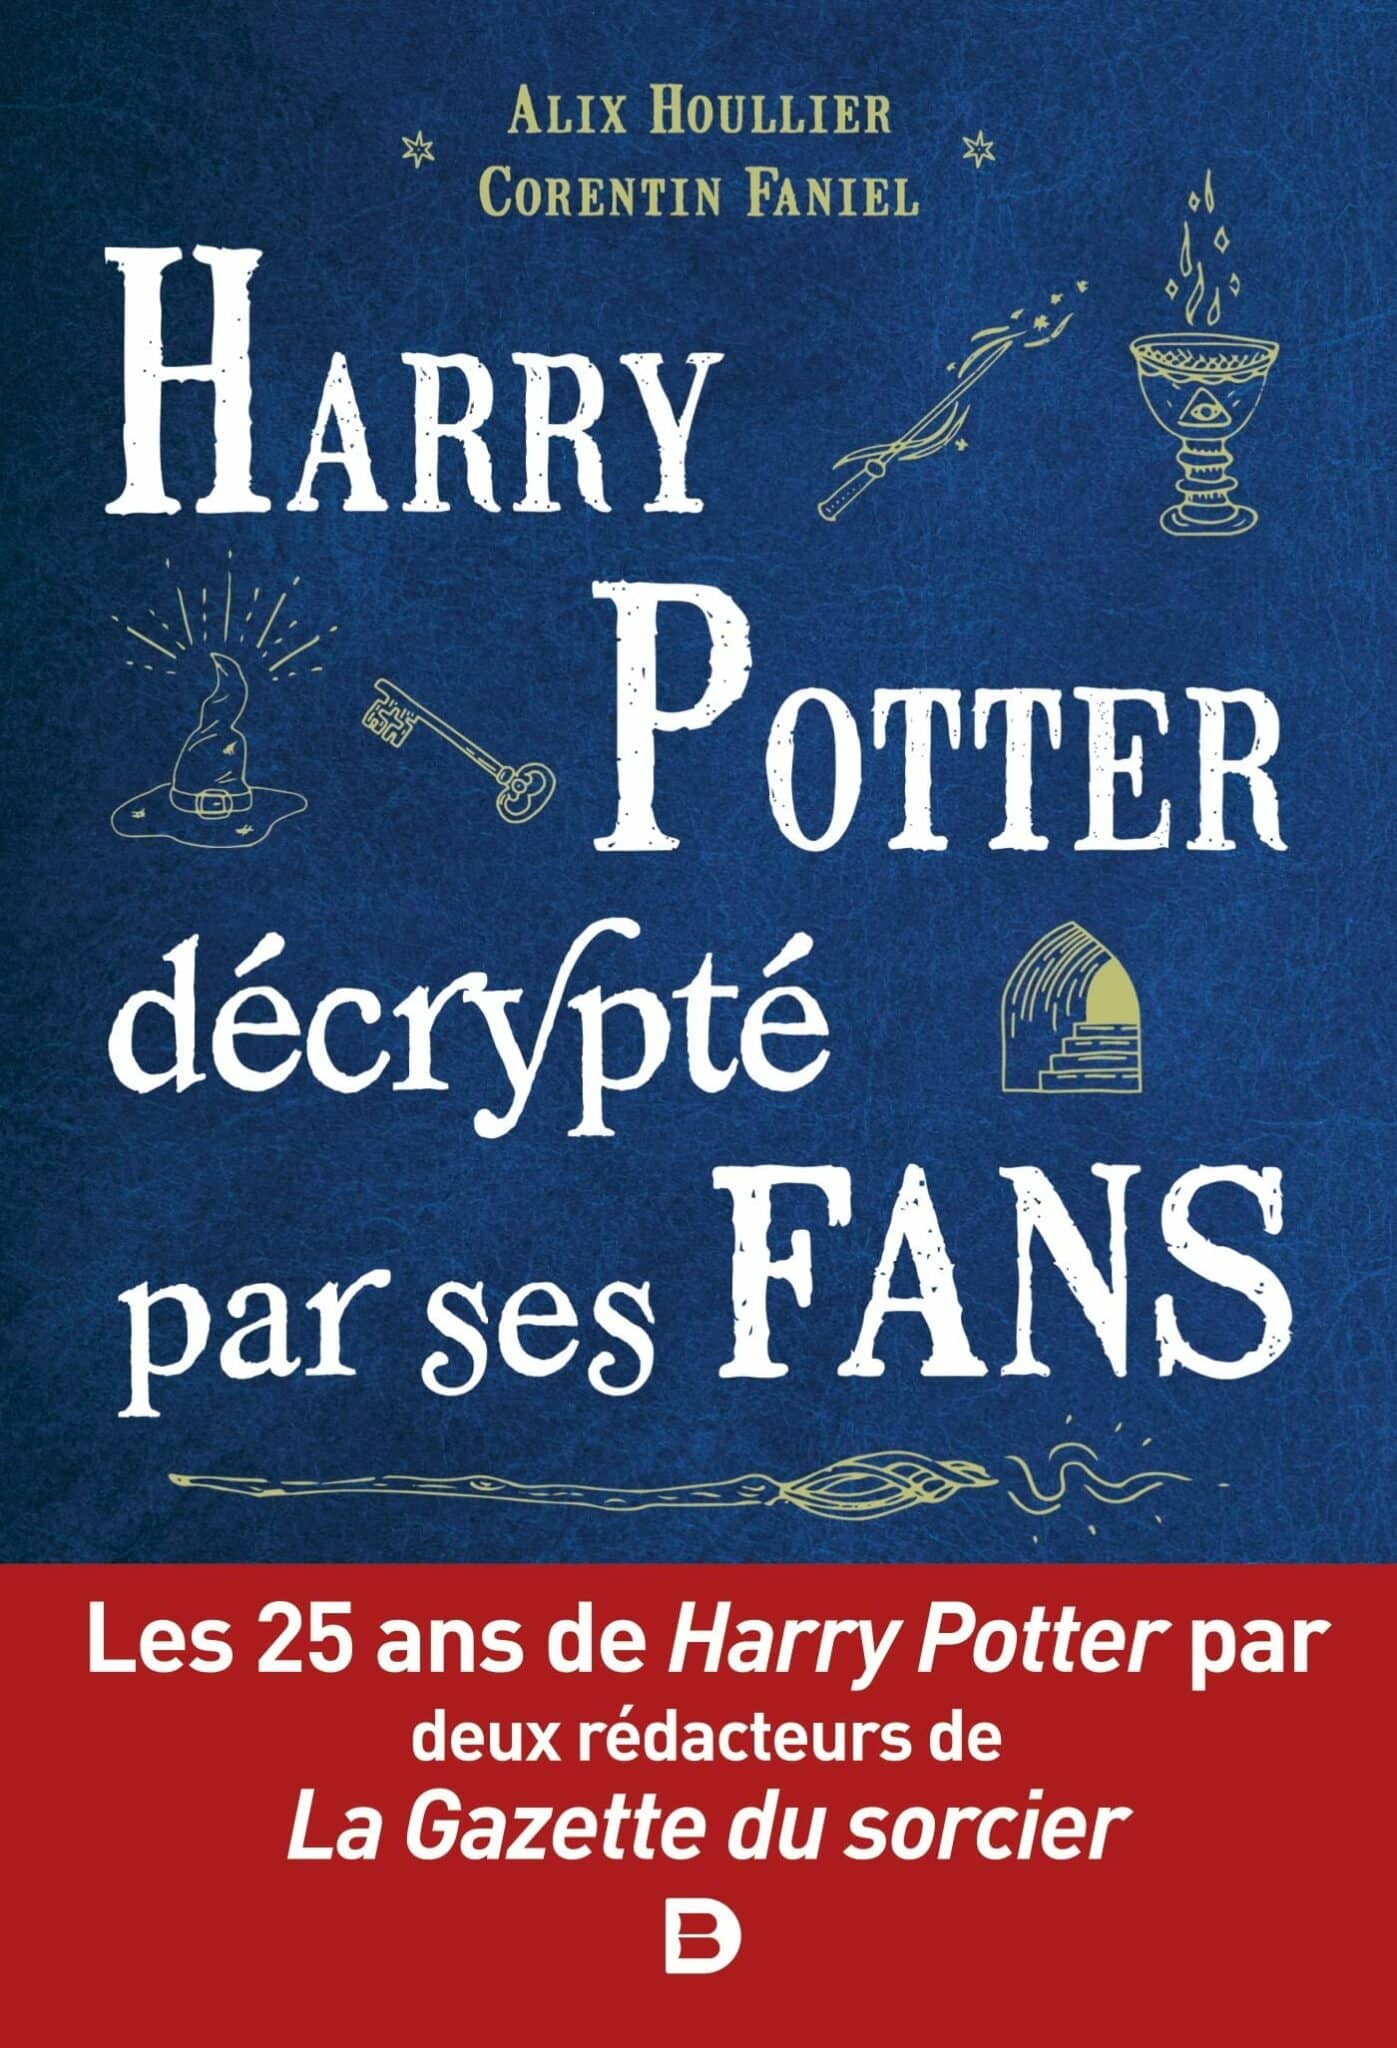 La couverture de "Harry Potter décrypté par ses fans" intègre quelques symboles liés au roman qui représentent un chapeau magique, une clé, une baguette magique, l'entrée d'un tunnel ou encore une coupe.